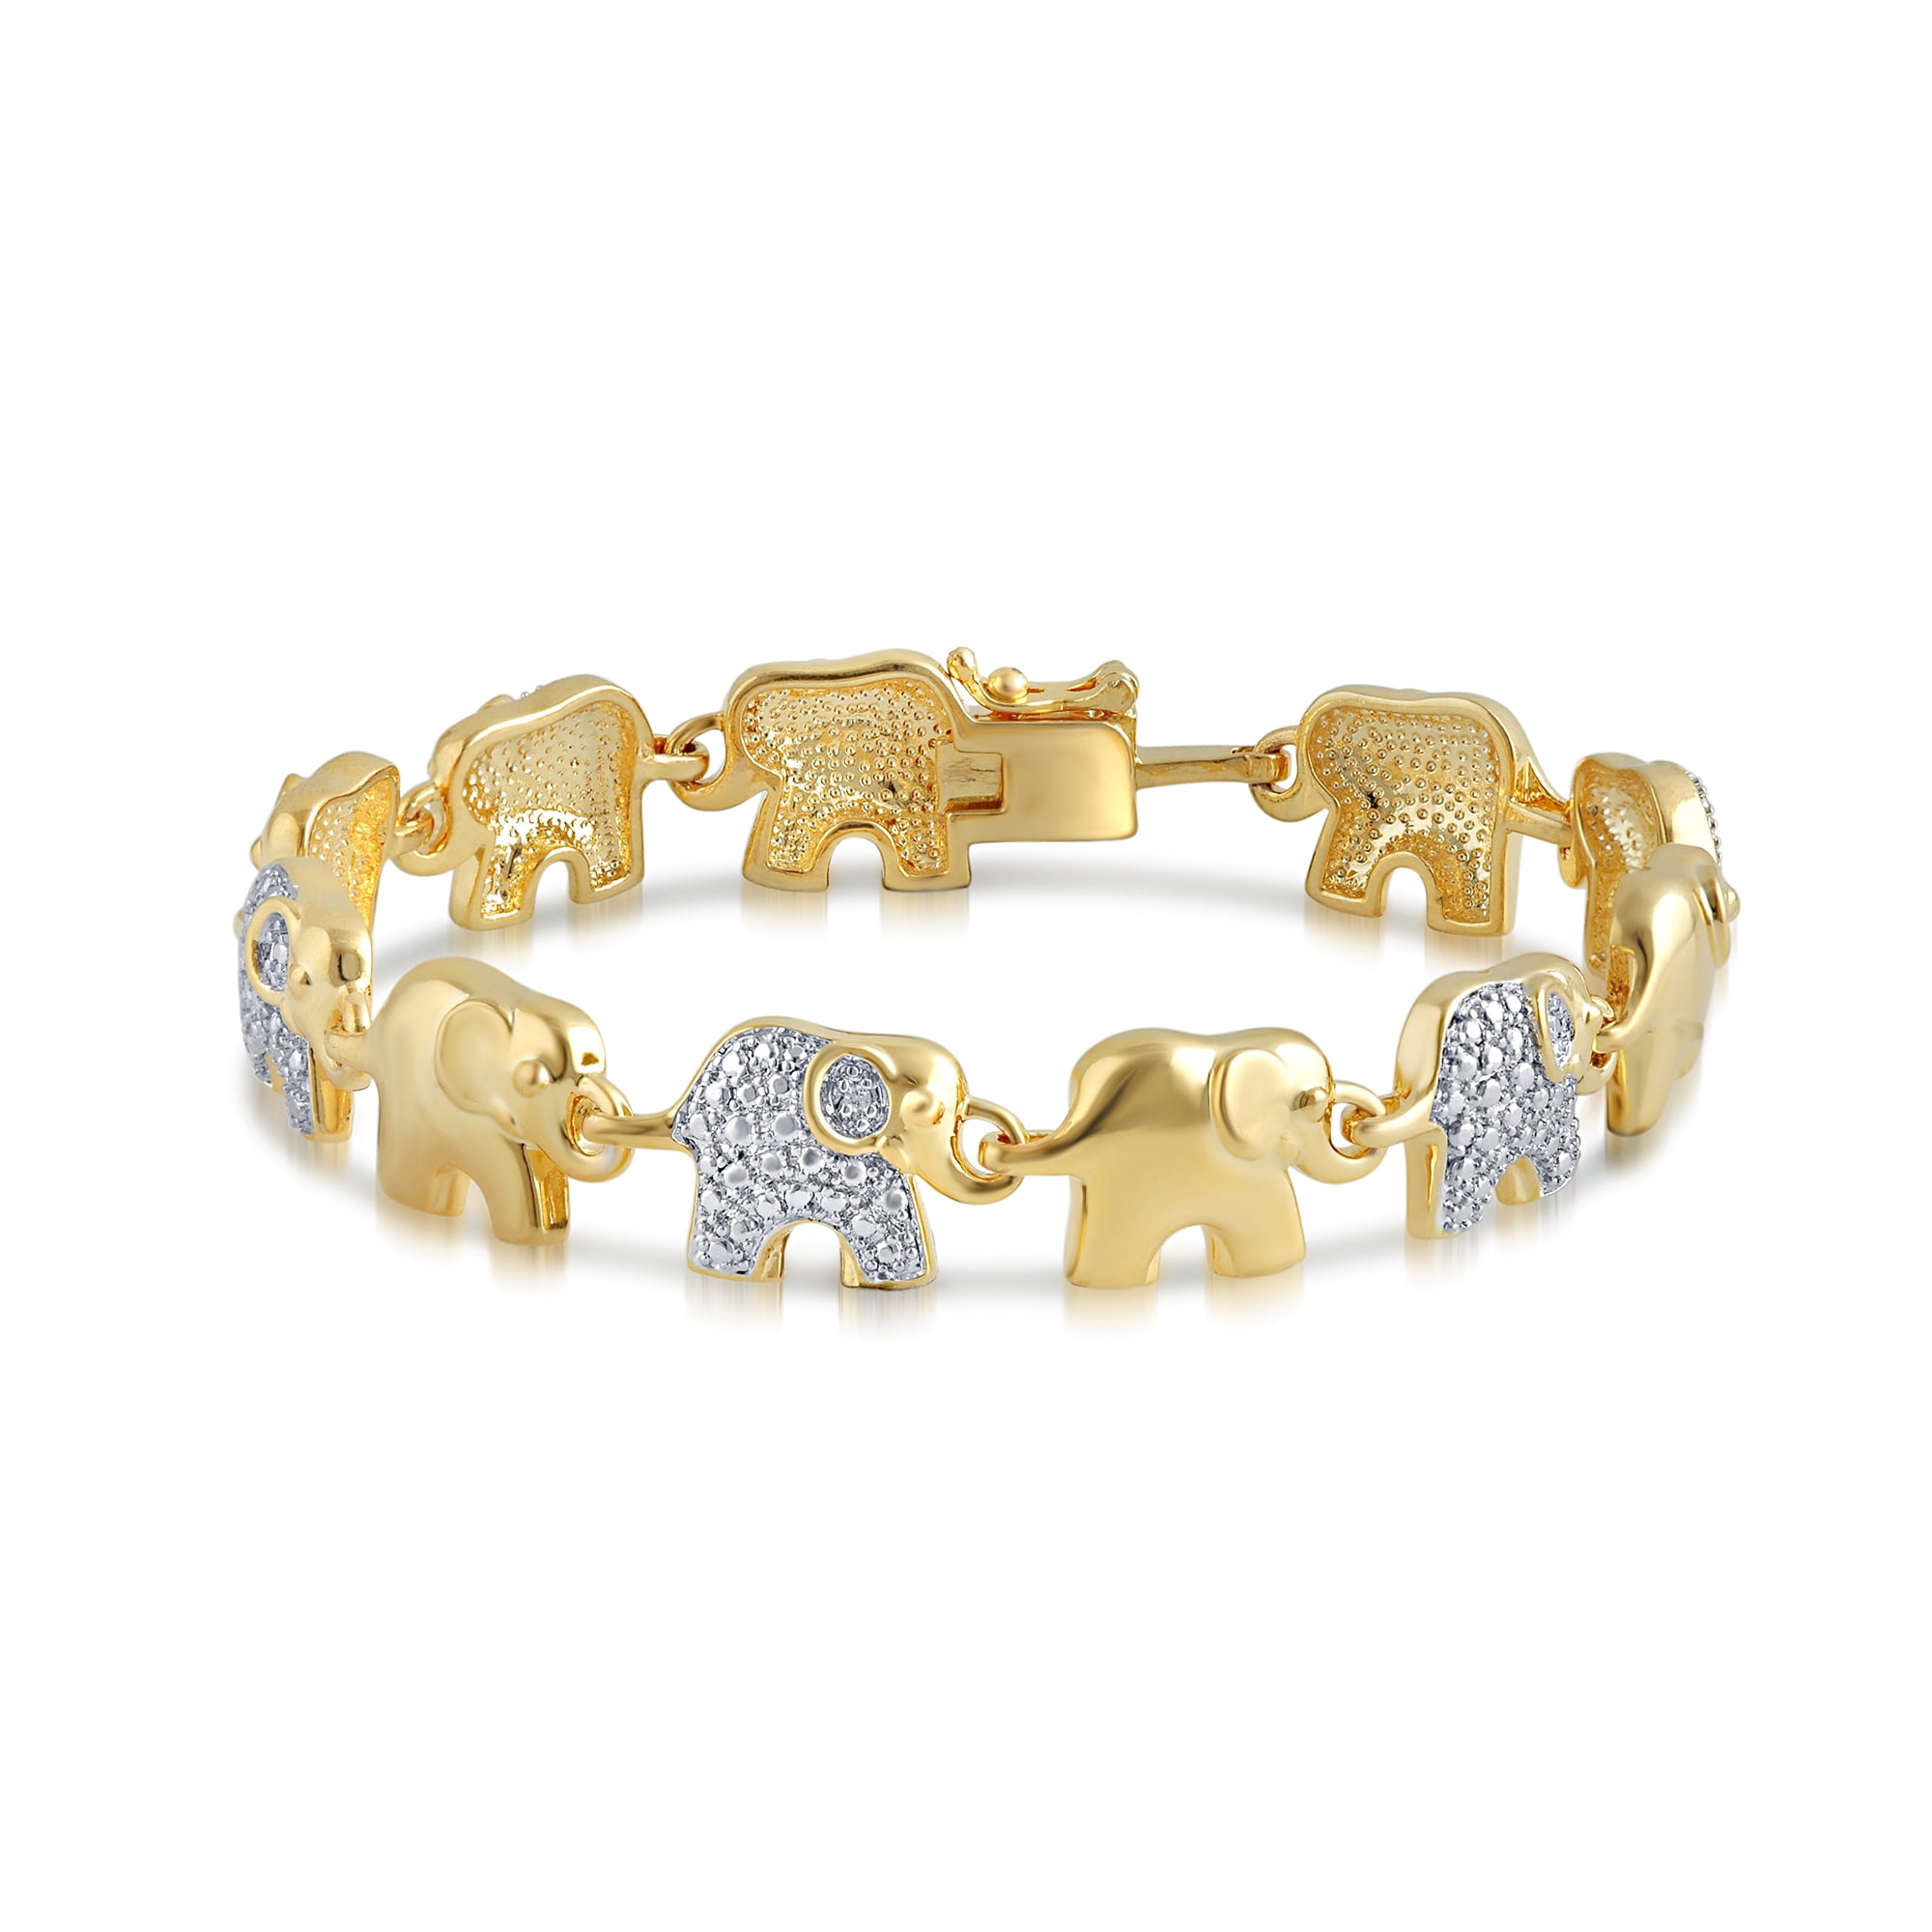 Share more than 74 copper elephant hair bracelet latest - POPPY